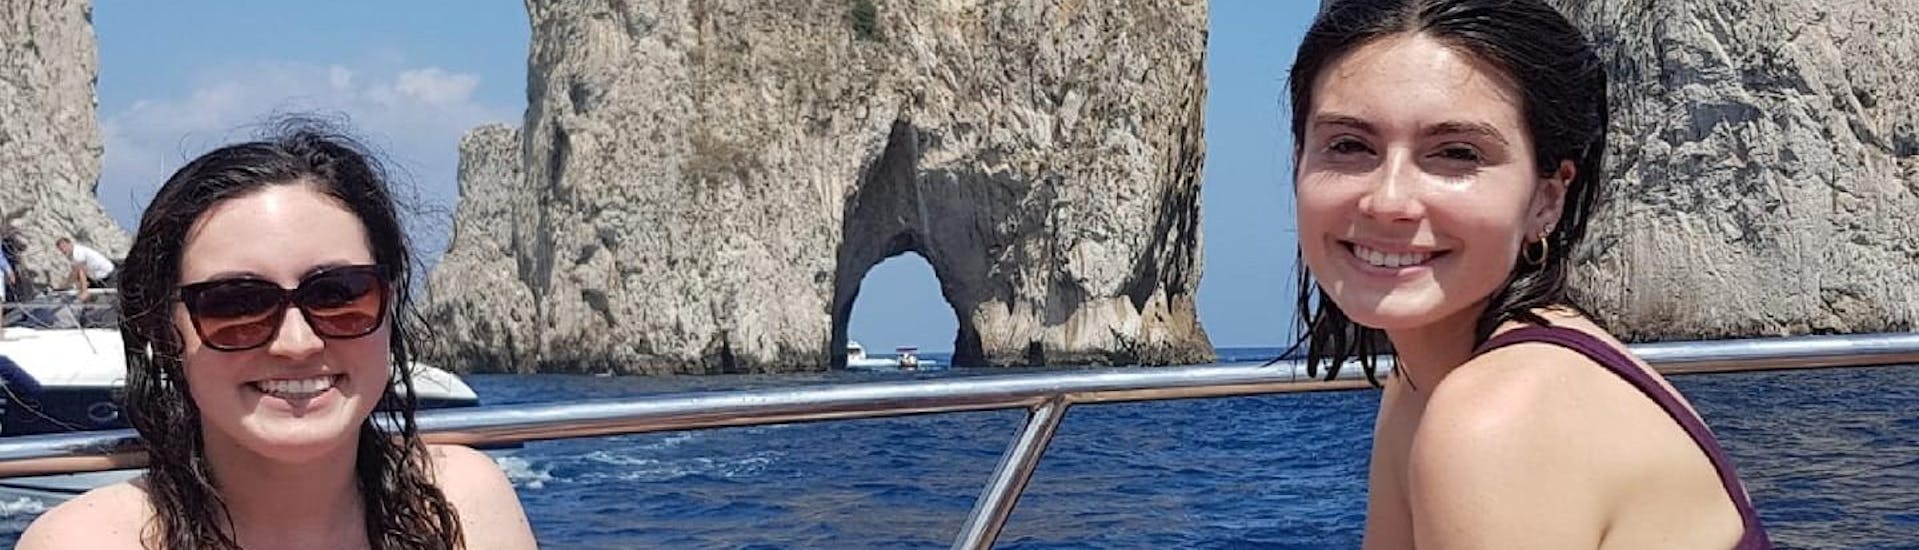 Twee lachende vrienden poseren voor de Faraglioni tijdens een privé boottocht van Amalfi naar Capri met Lubrense Boats Amalfi Coast.